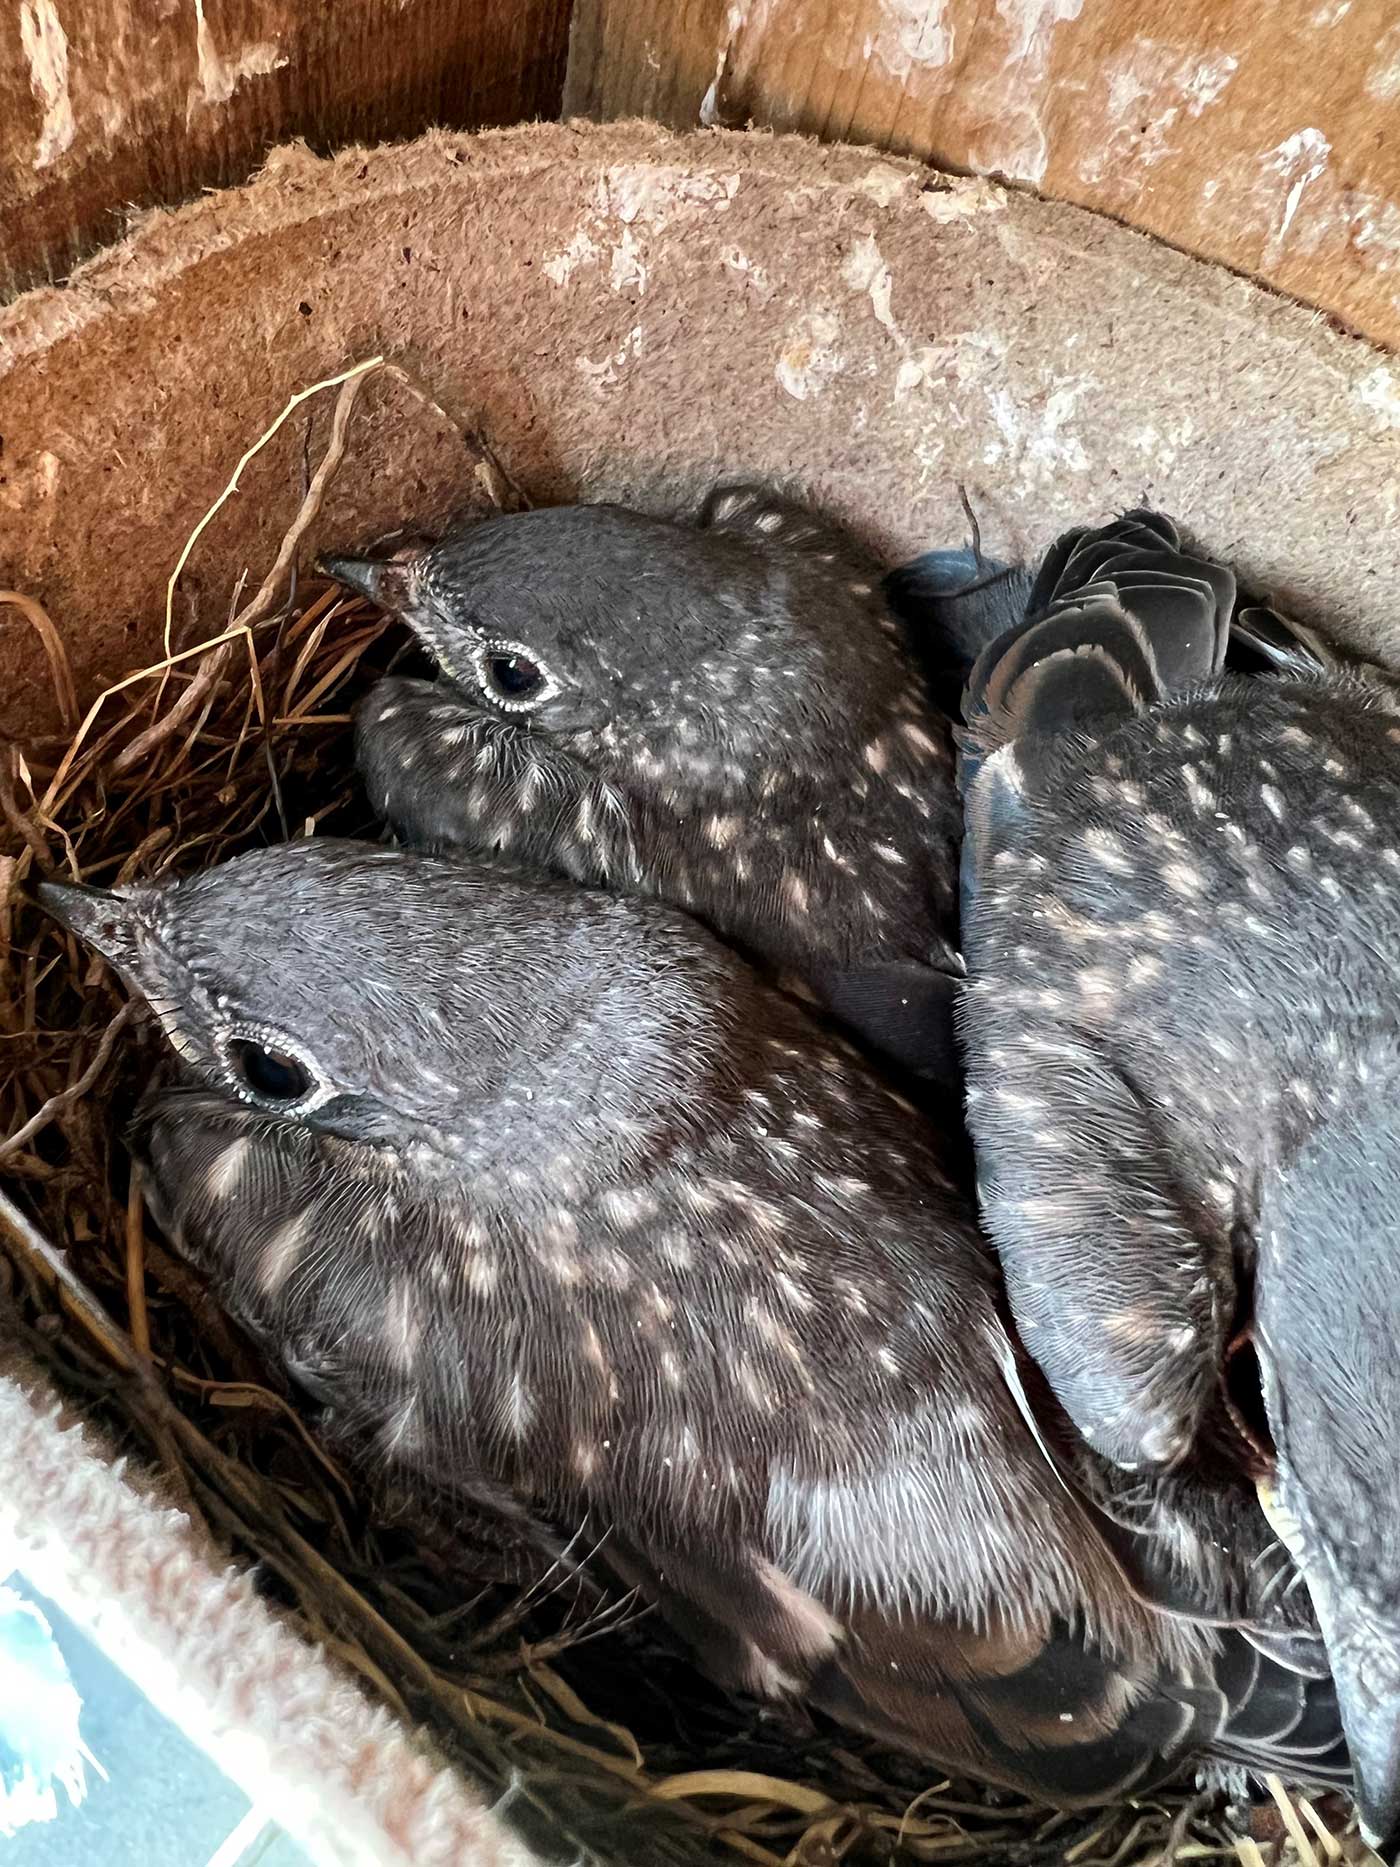 Bluebird chicks in their nest